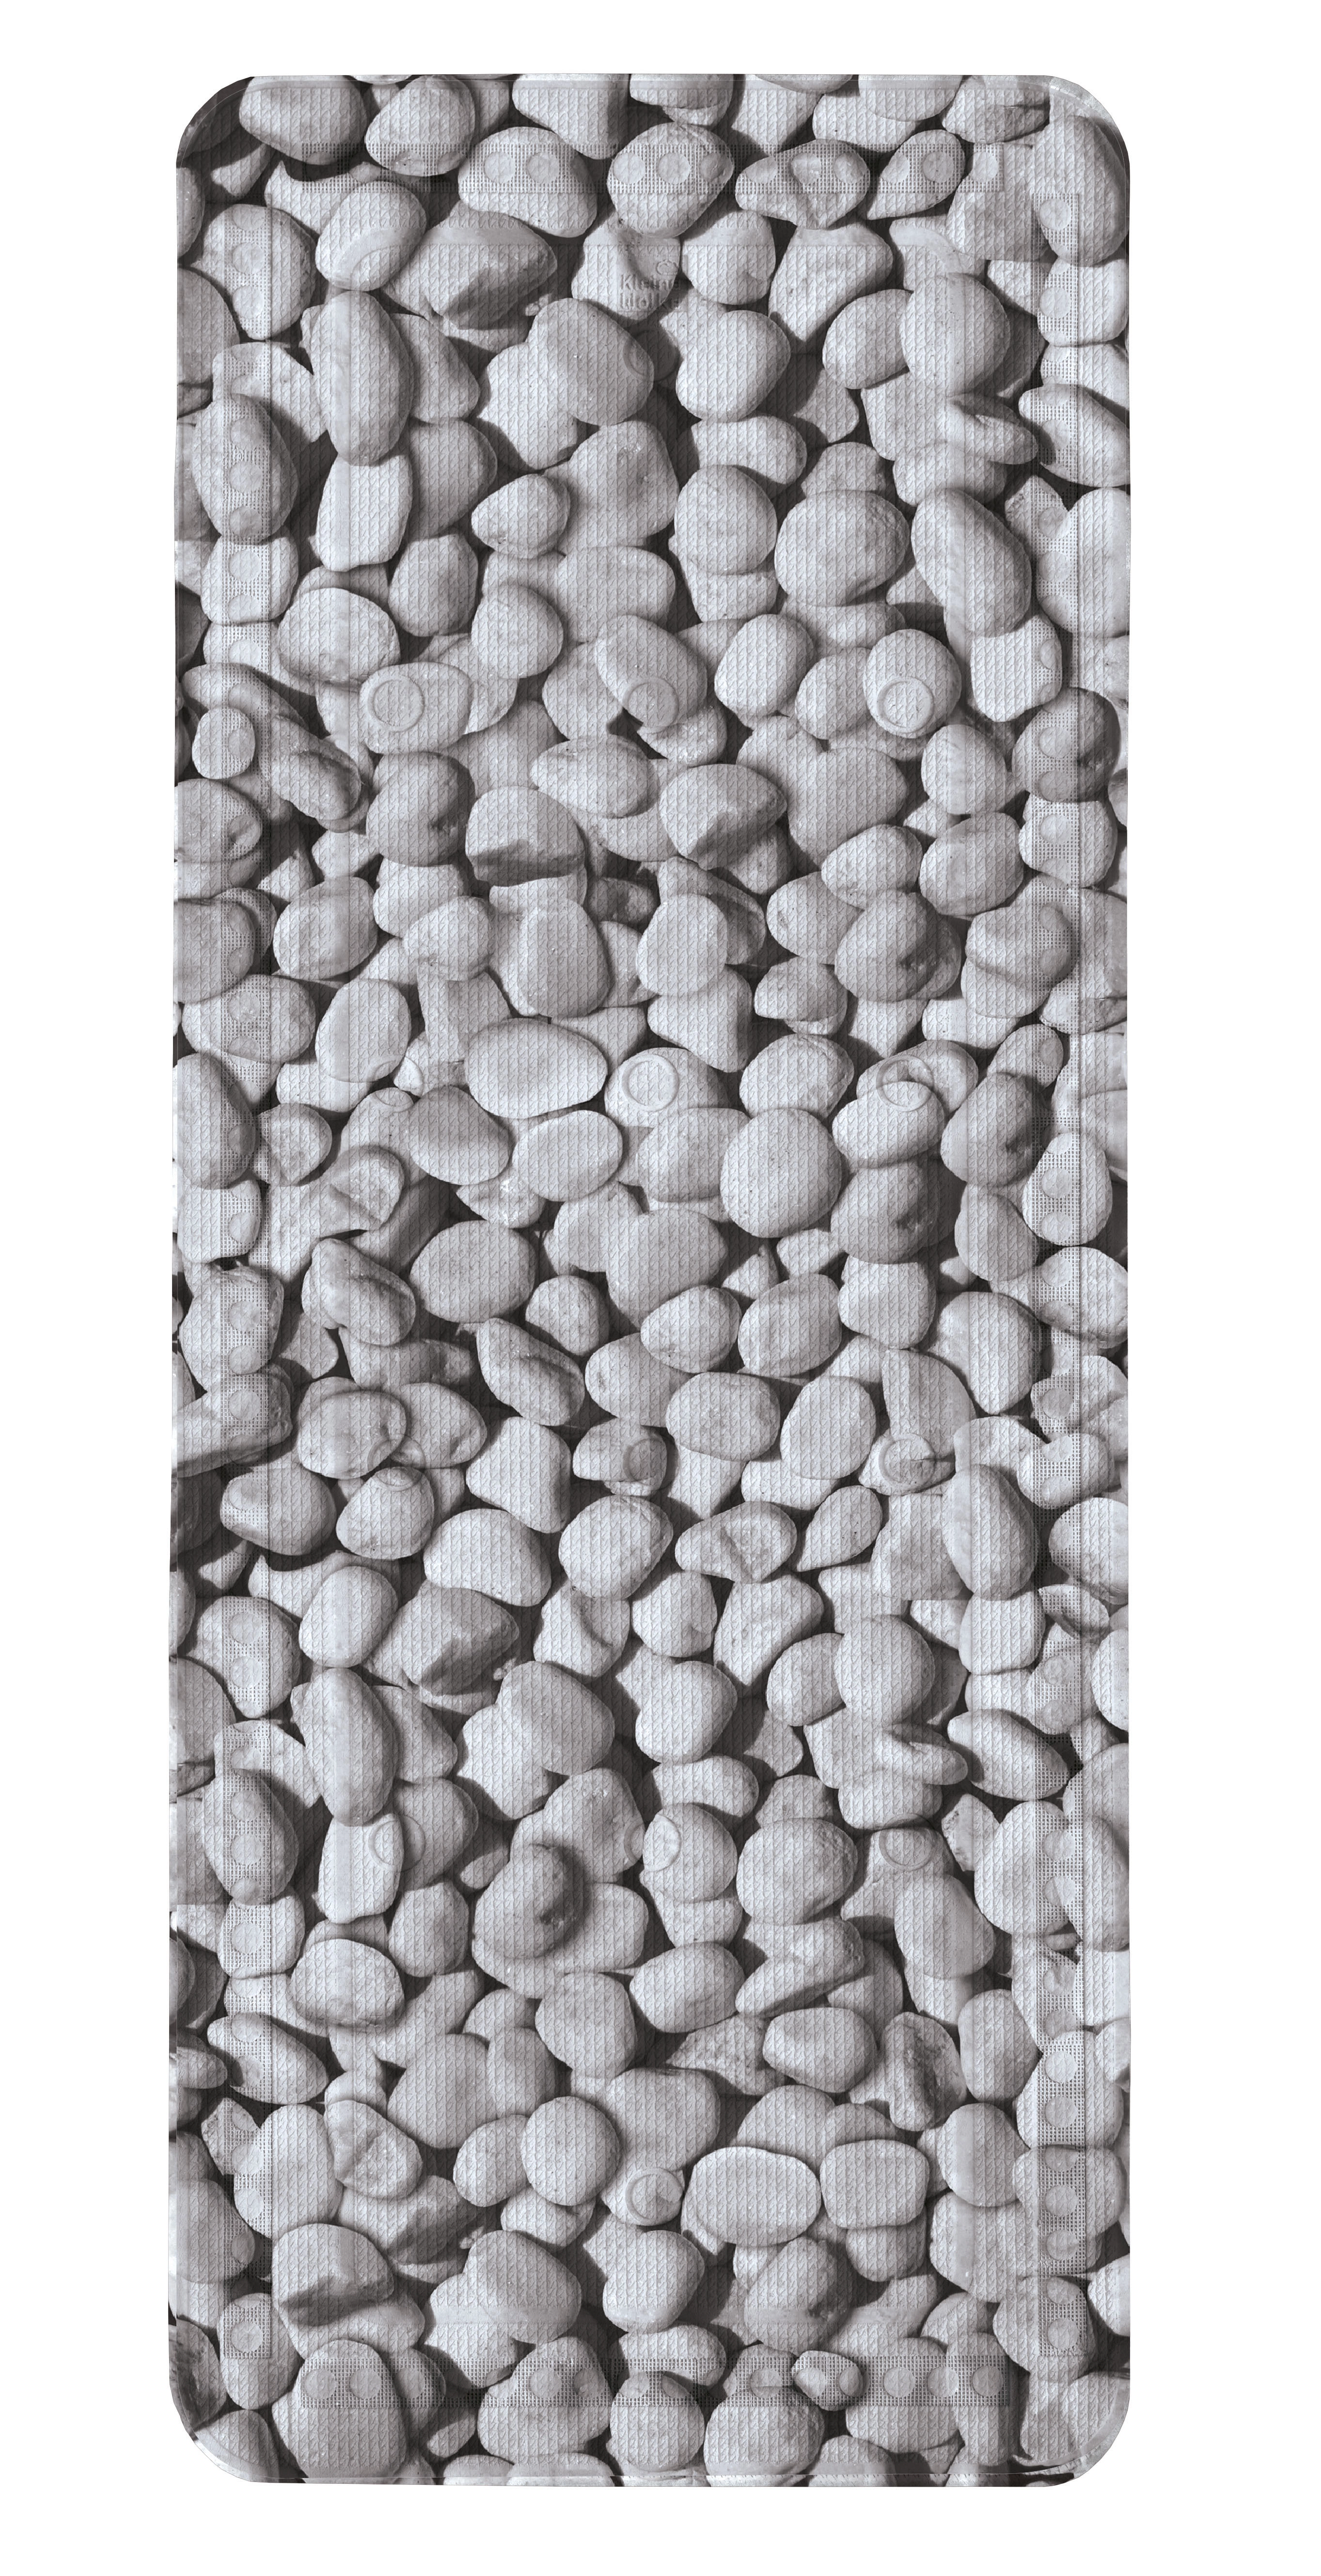 Duscheinlage, Stepstone Grau, 55x 55 cm